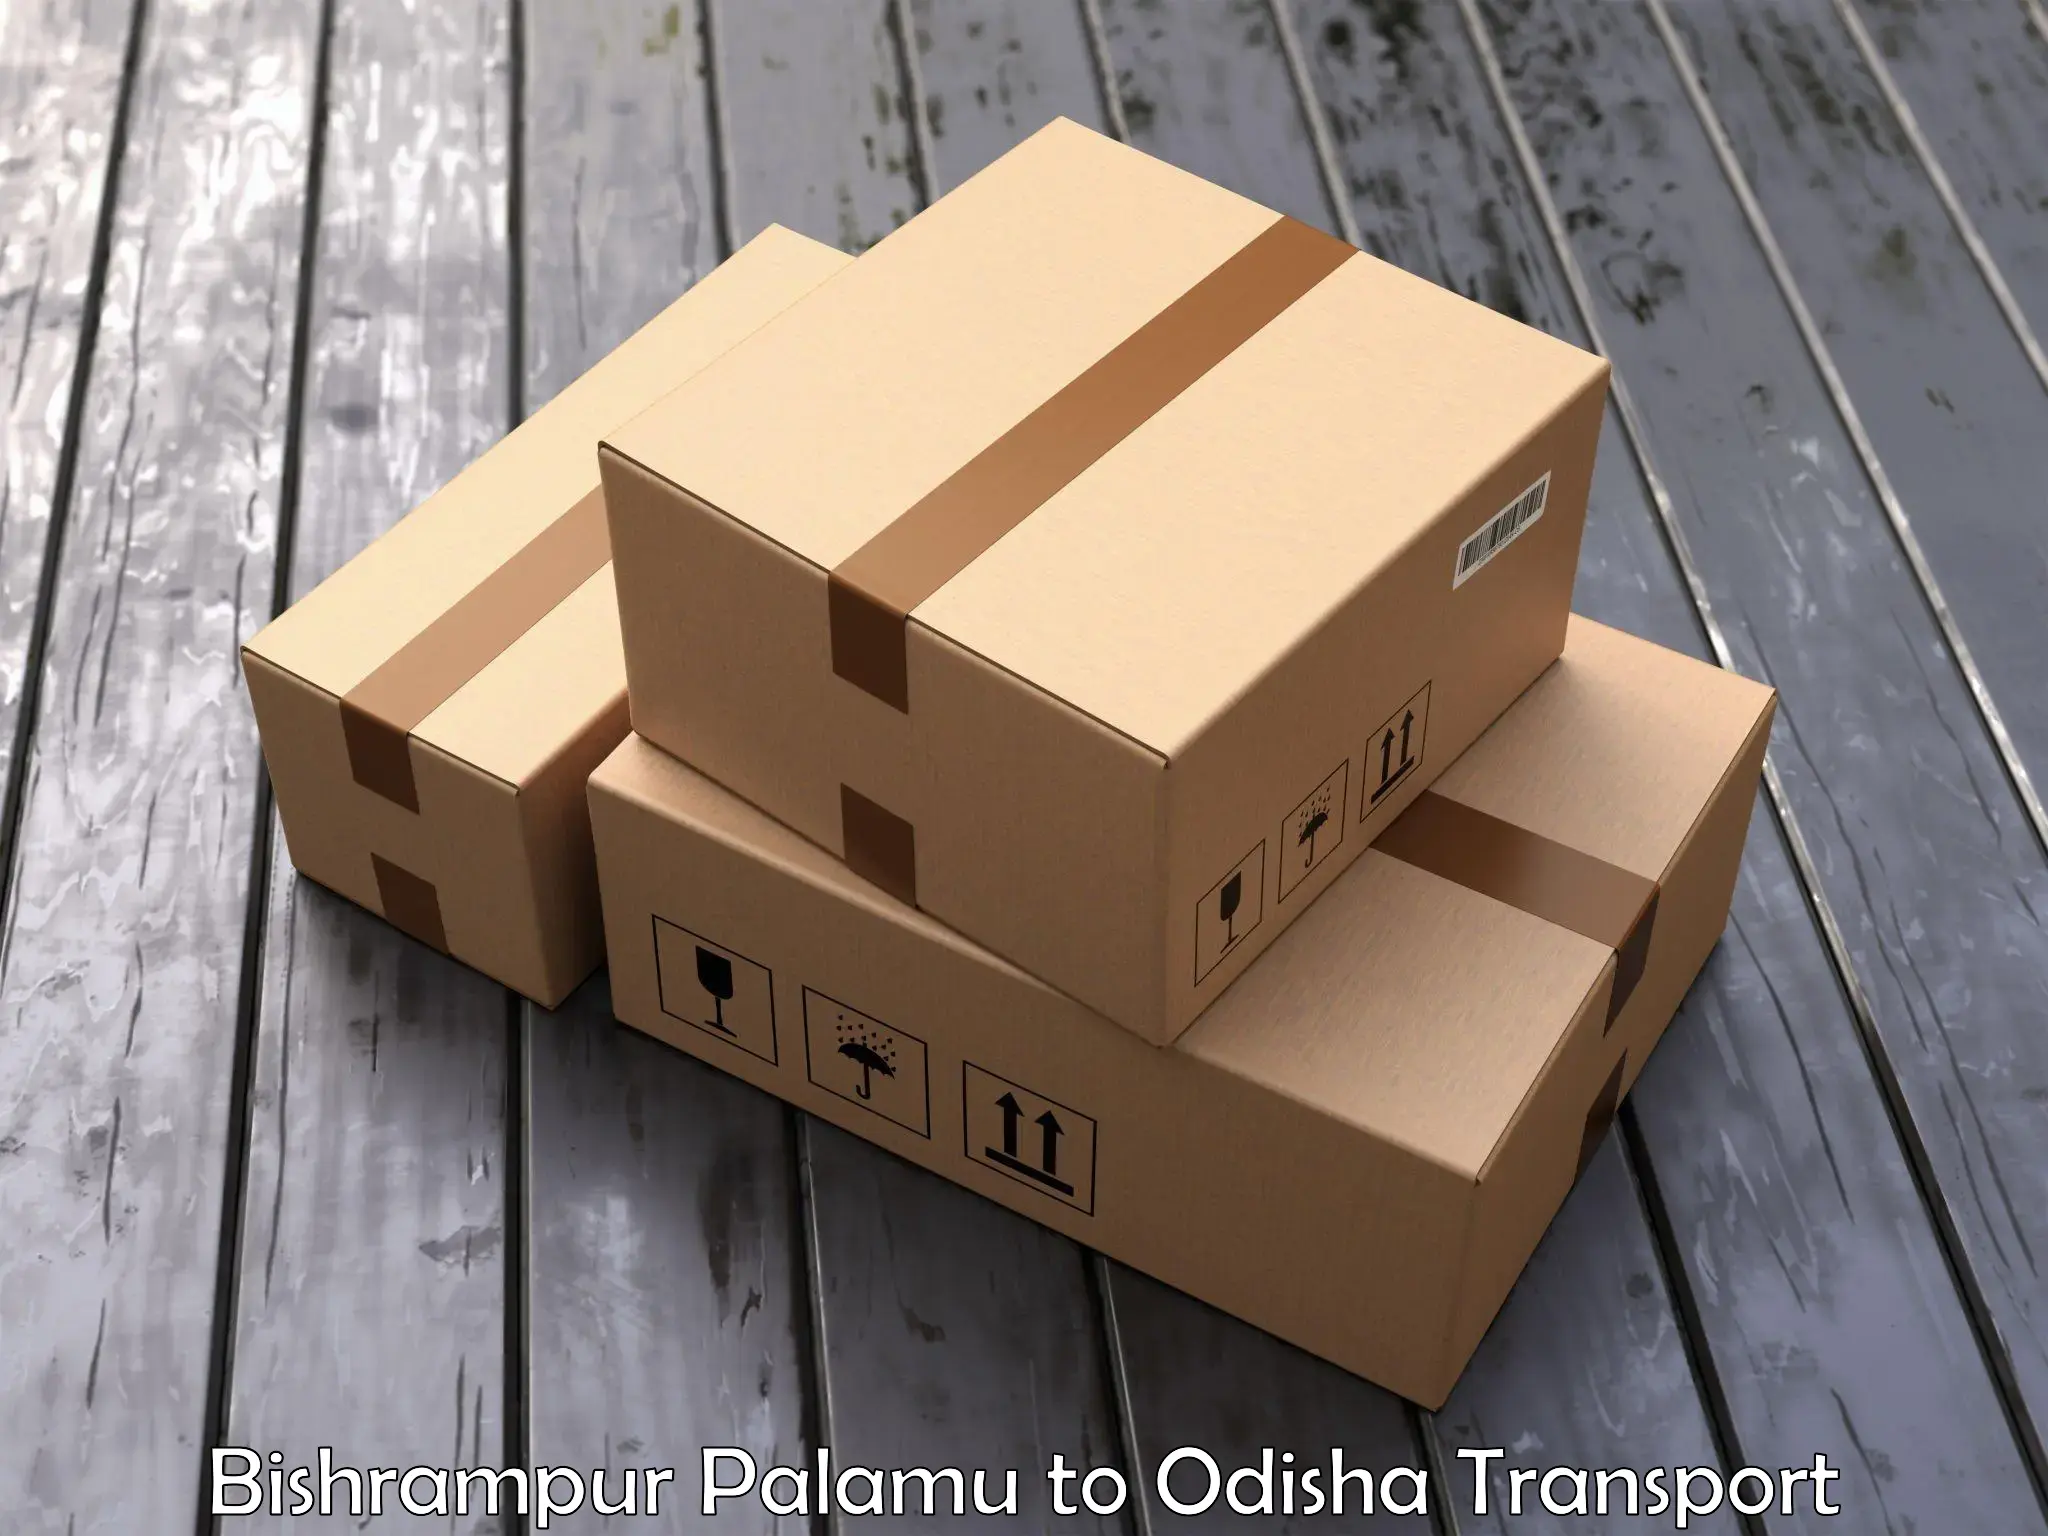 Furniture transport service Bishrampur Palamu to Chandipur